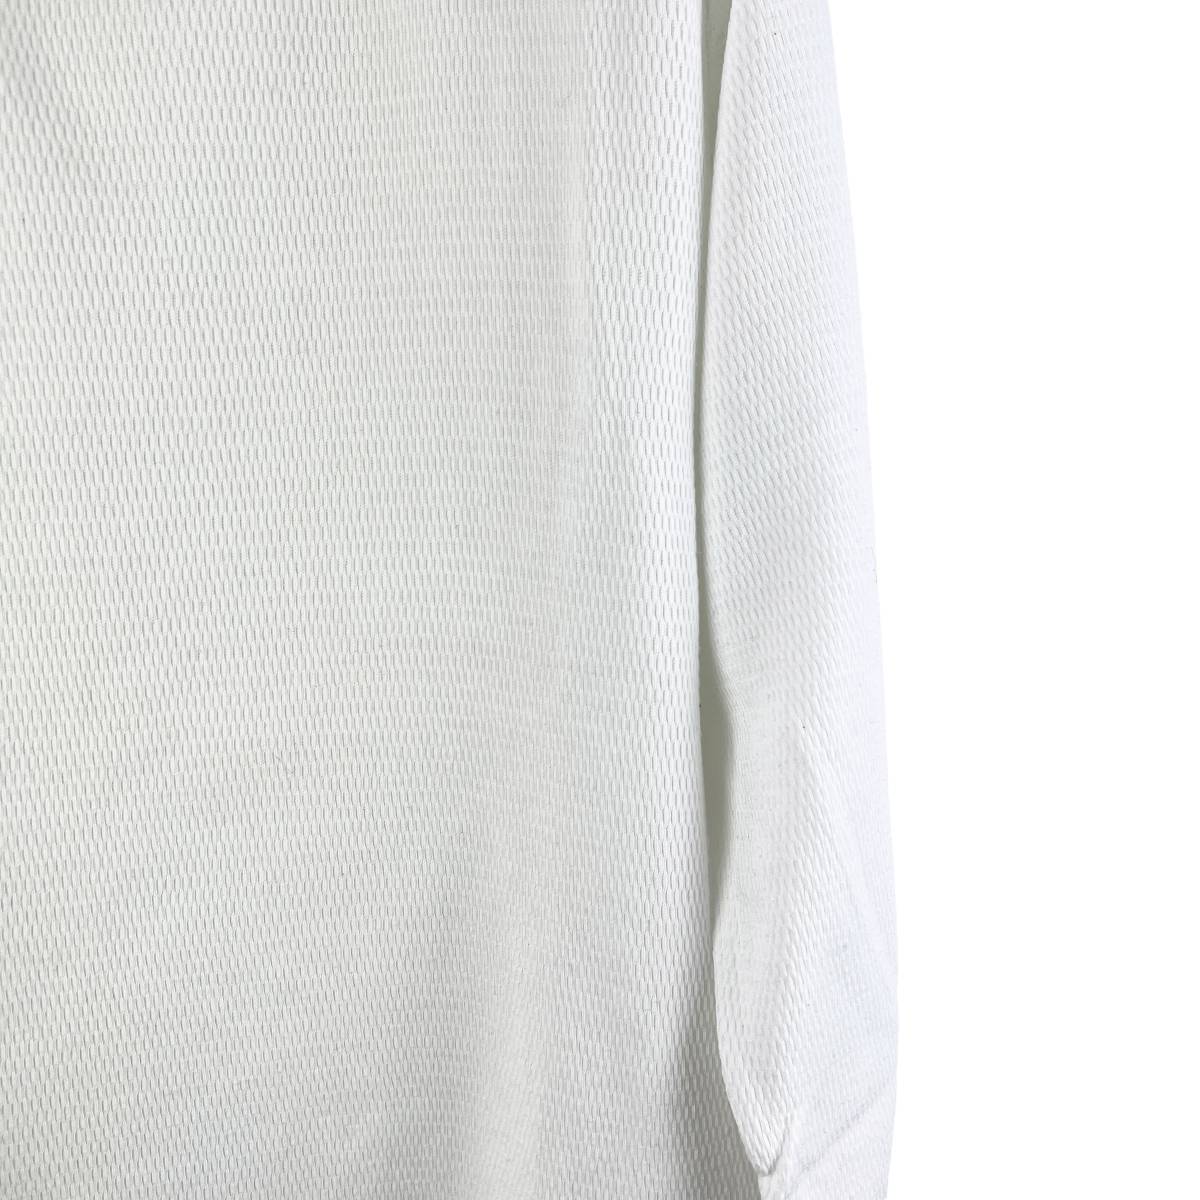 VISVIM(ビズビム) LONGSLEEVE KNIT T Shirt (white)